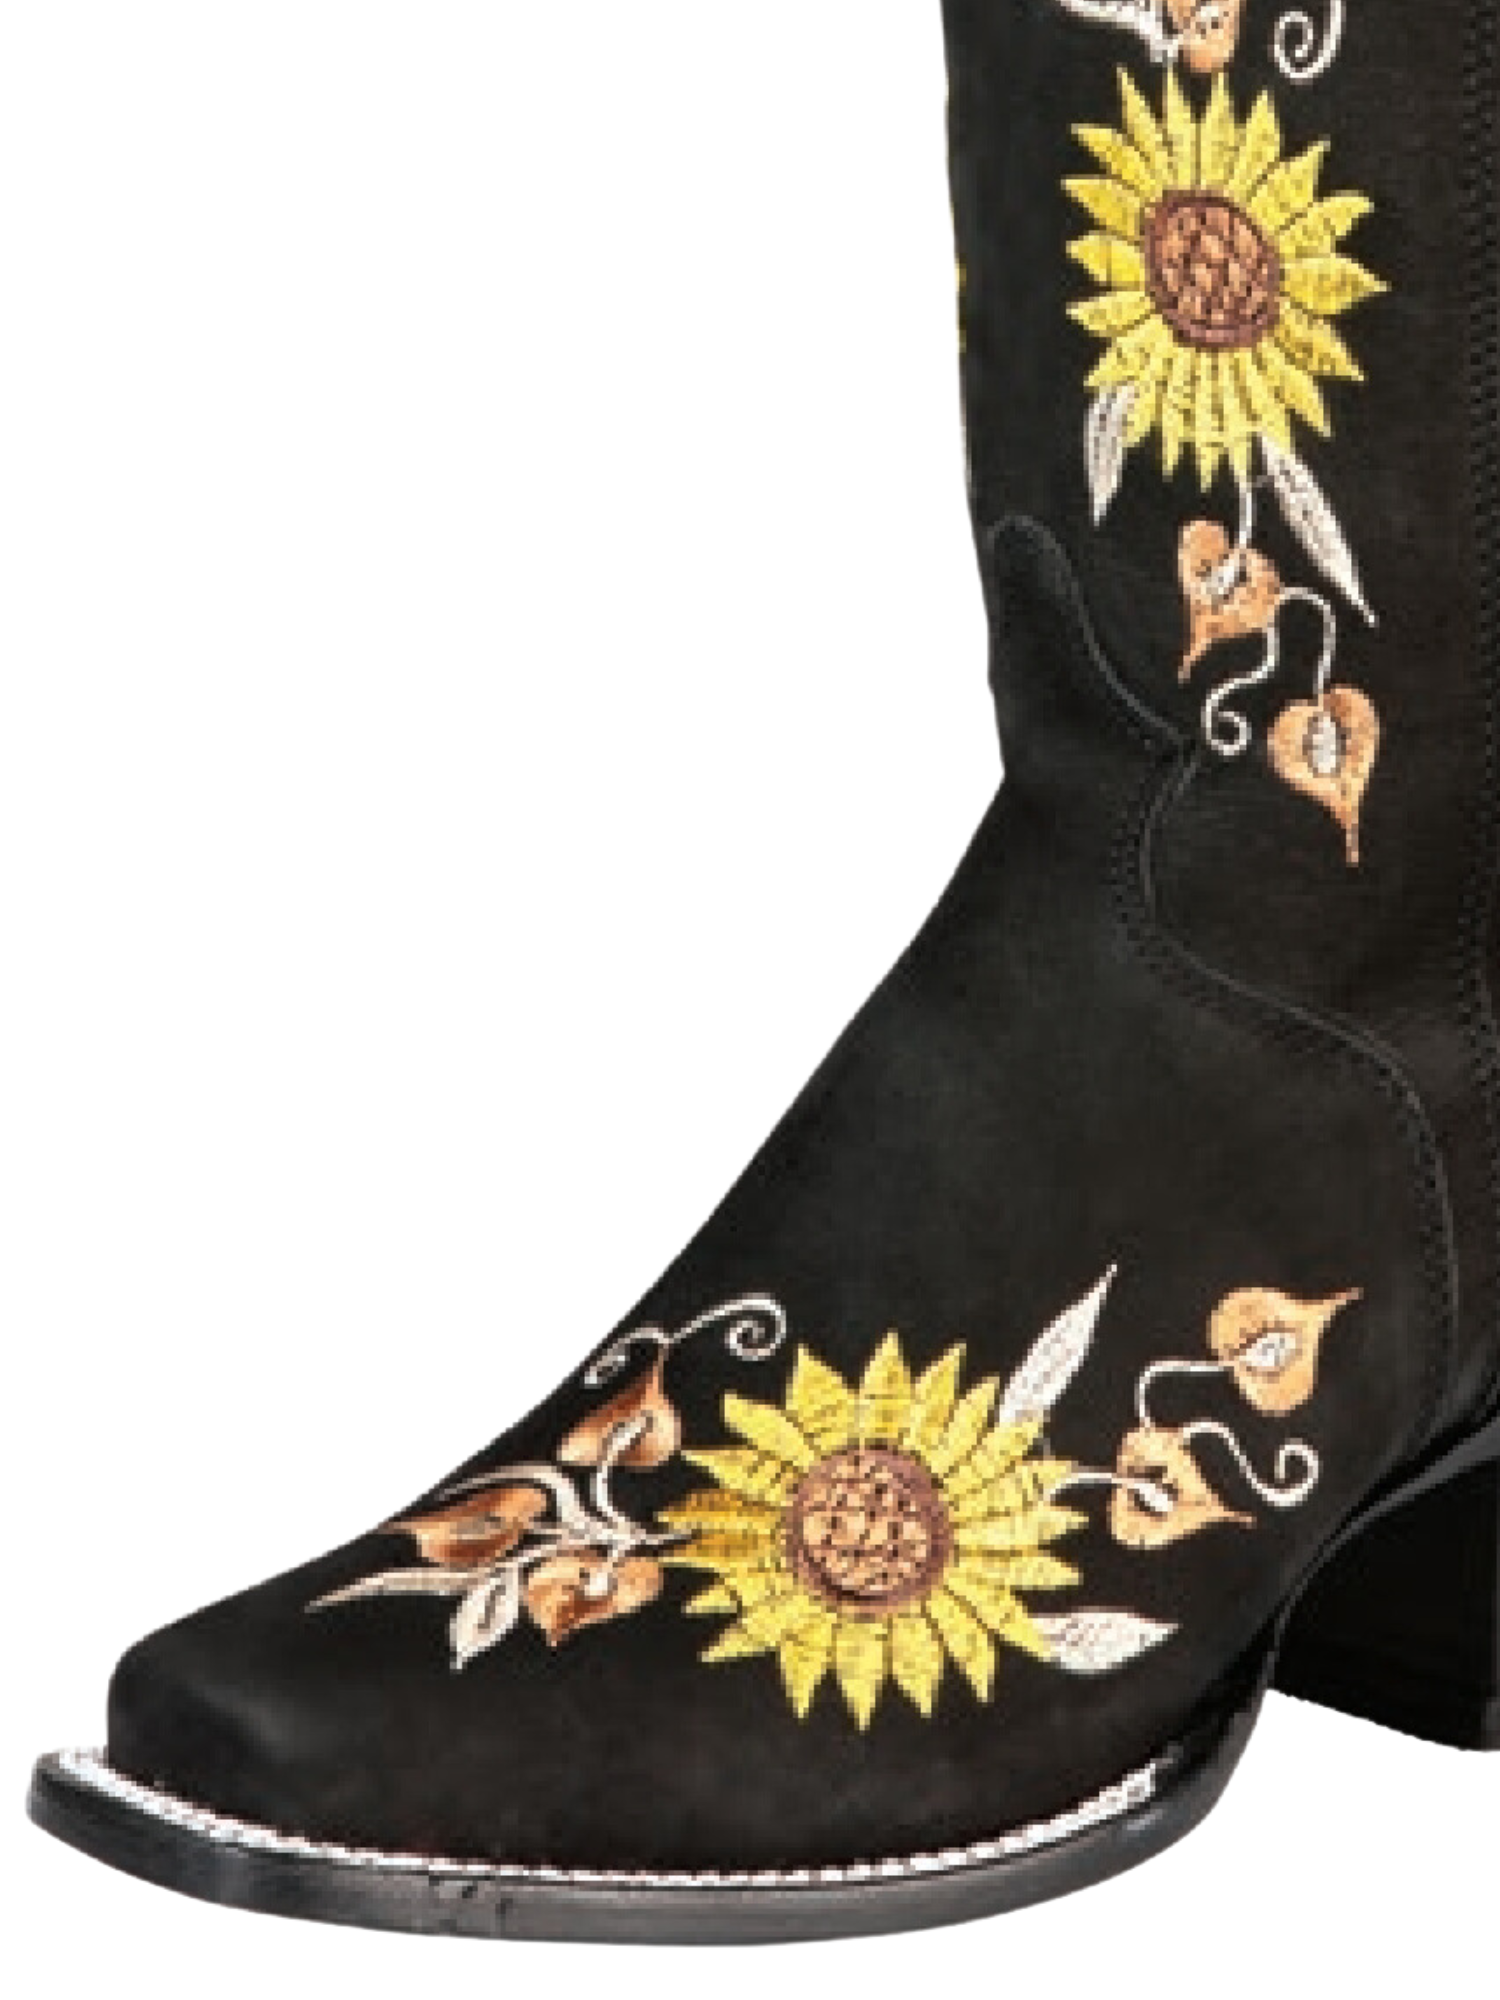 Botas Vaqueras Altas con Tubo Bordado de Girasoles de Piel Nobuck para Mujer 'El General' - ID: 43914 Cowgirl Boots El General 